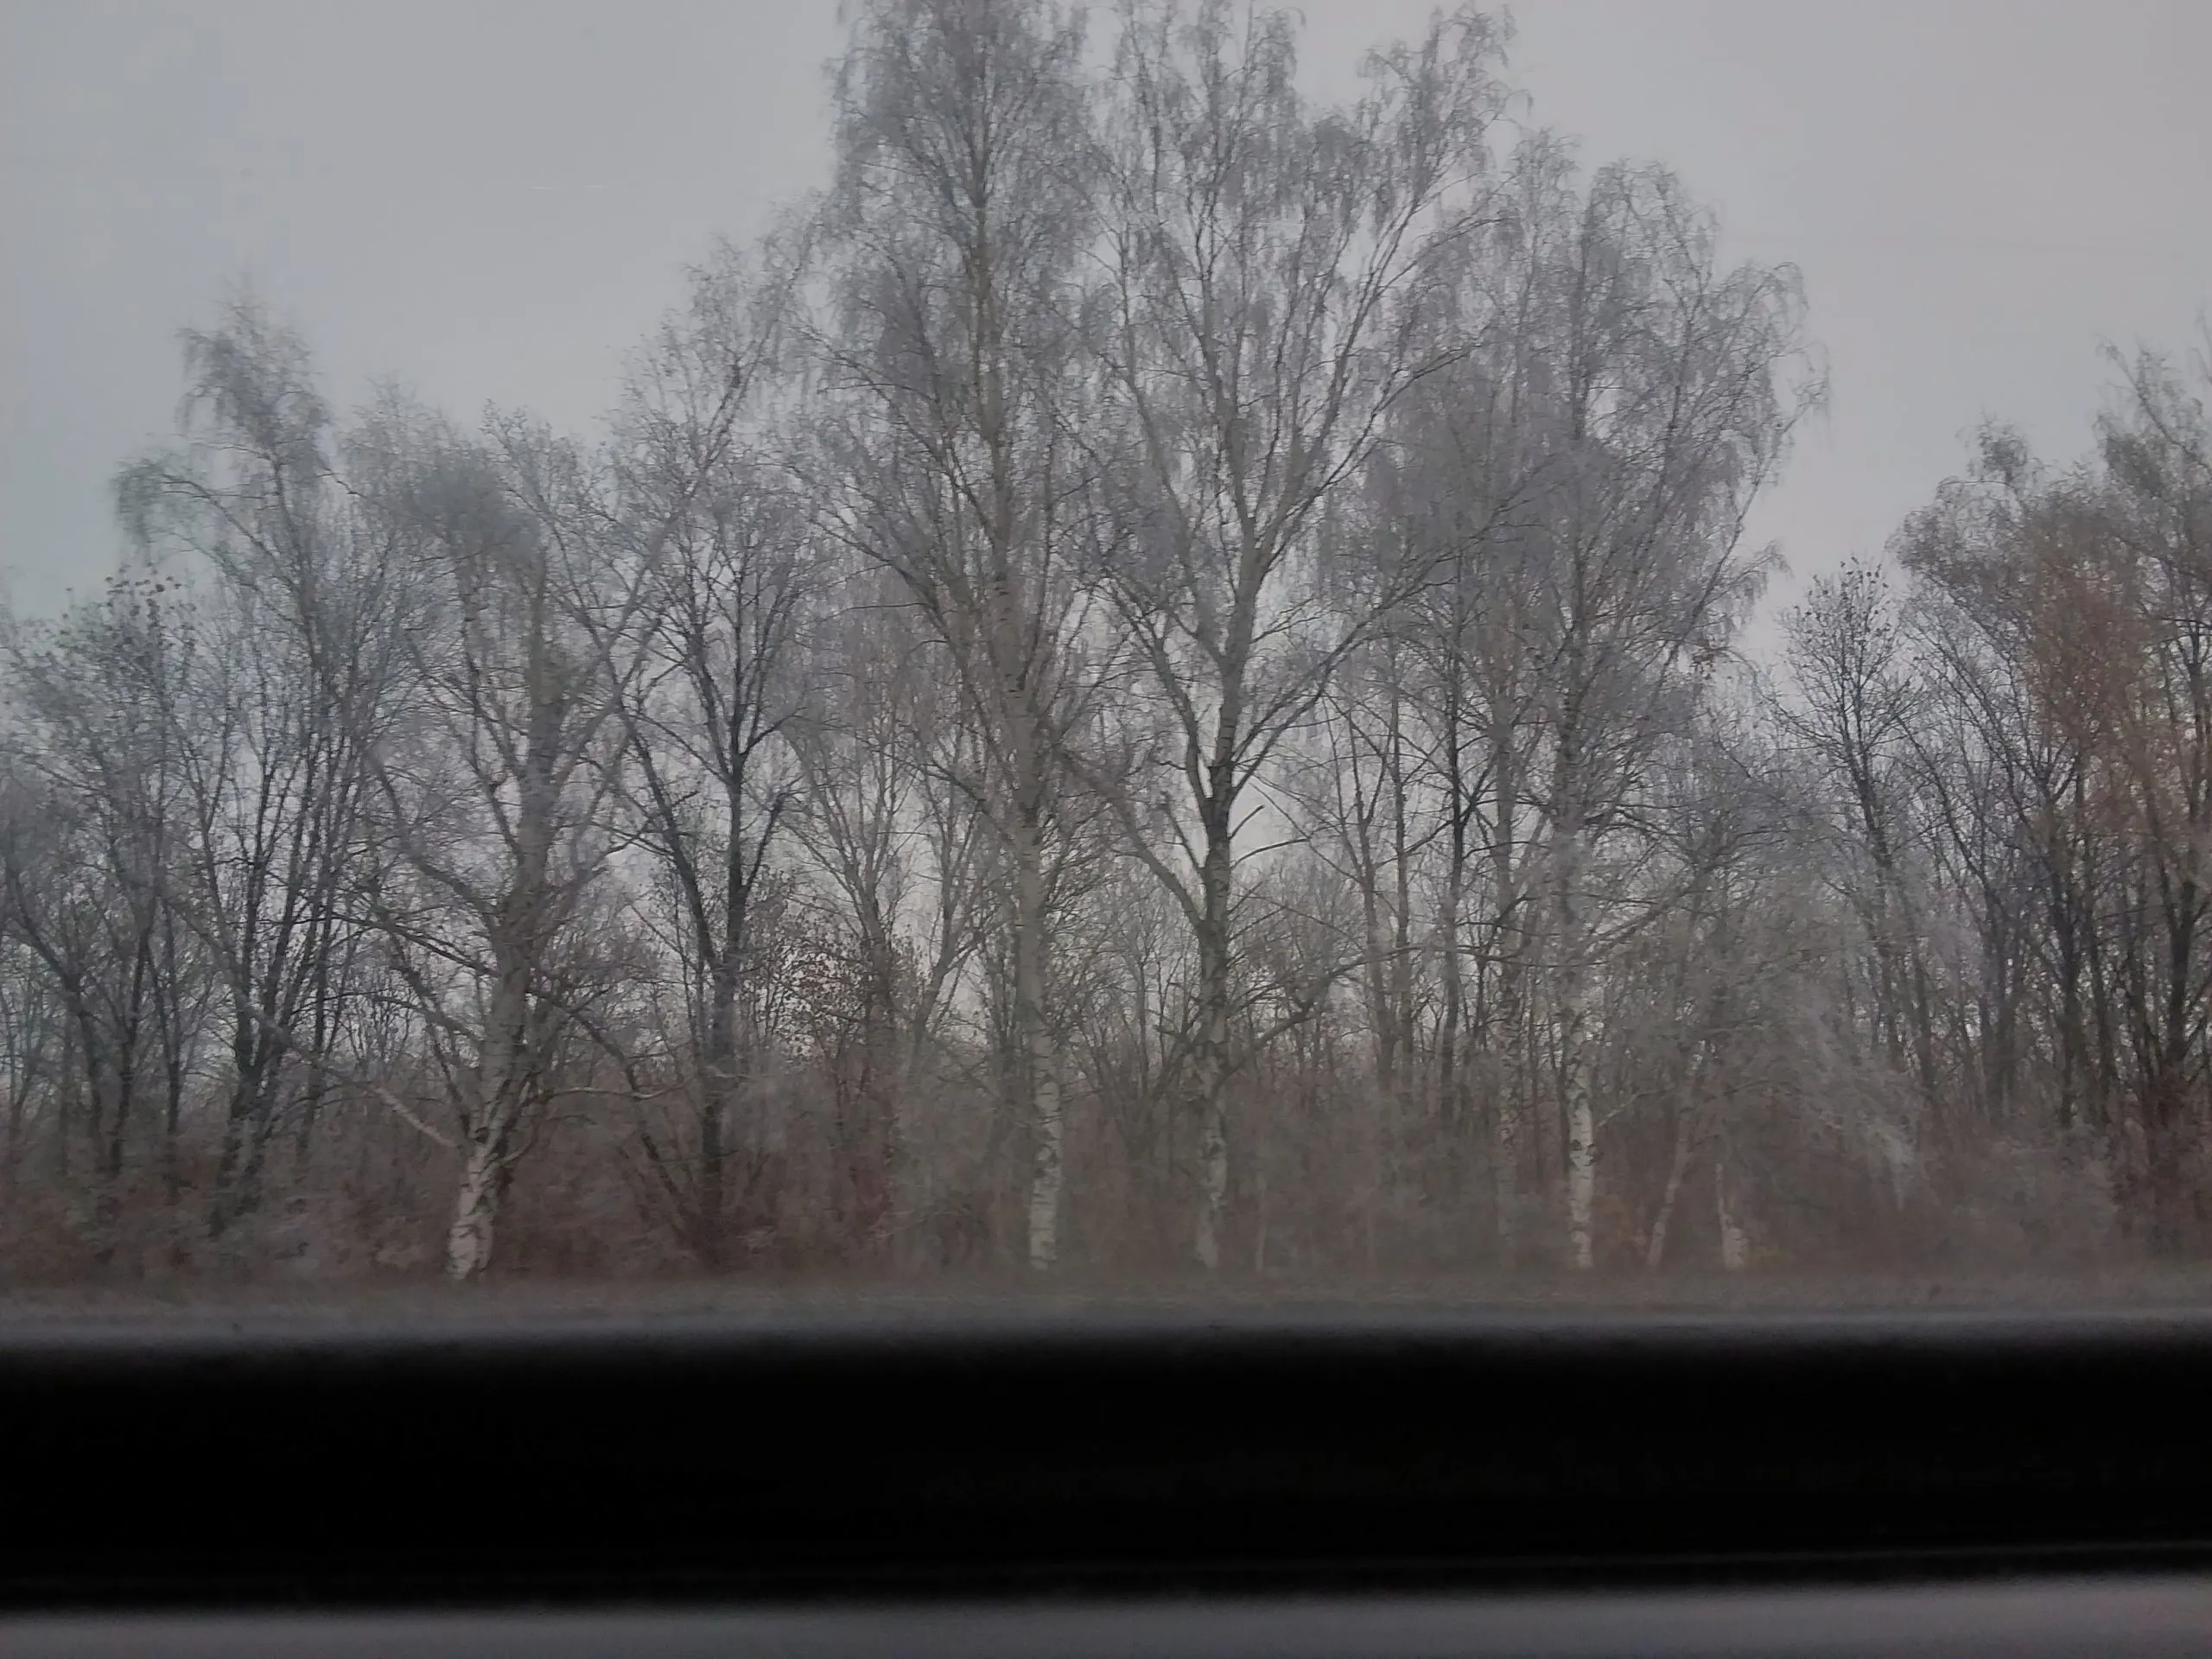 Фото из окна поезда зимой.